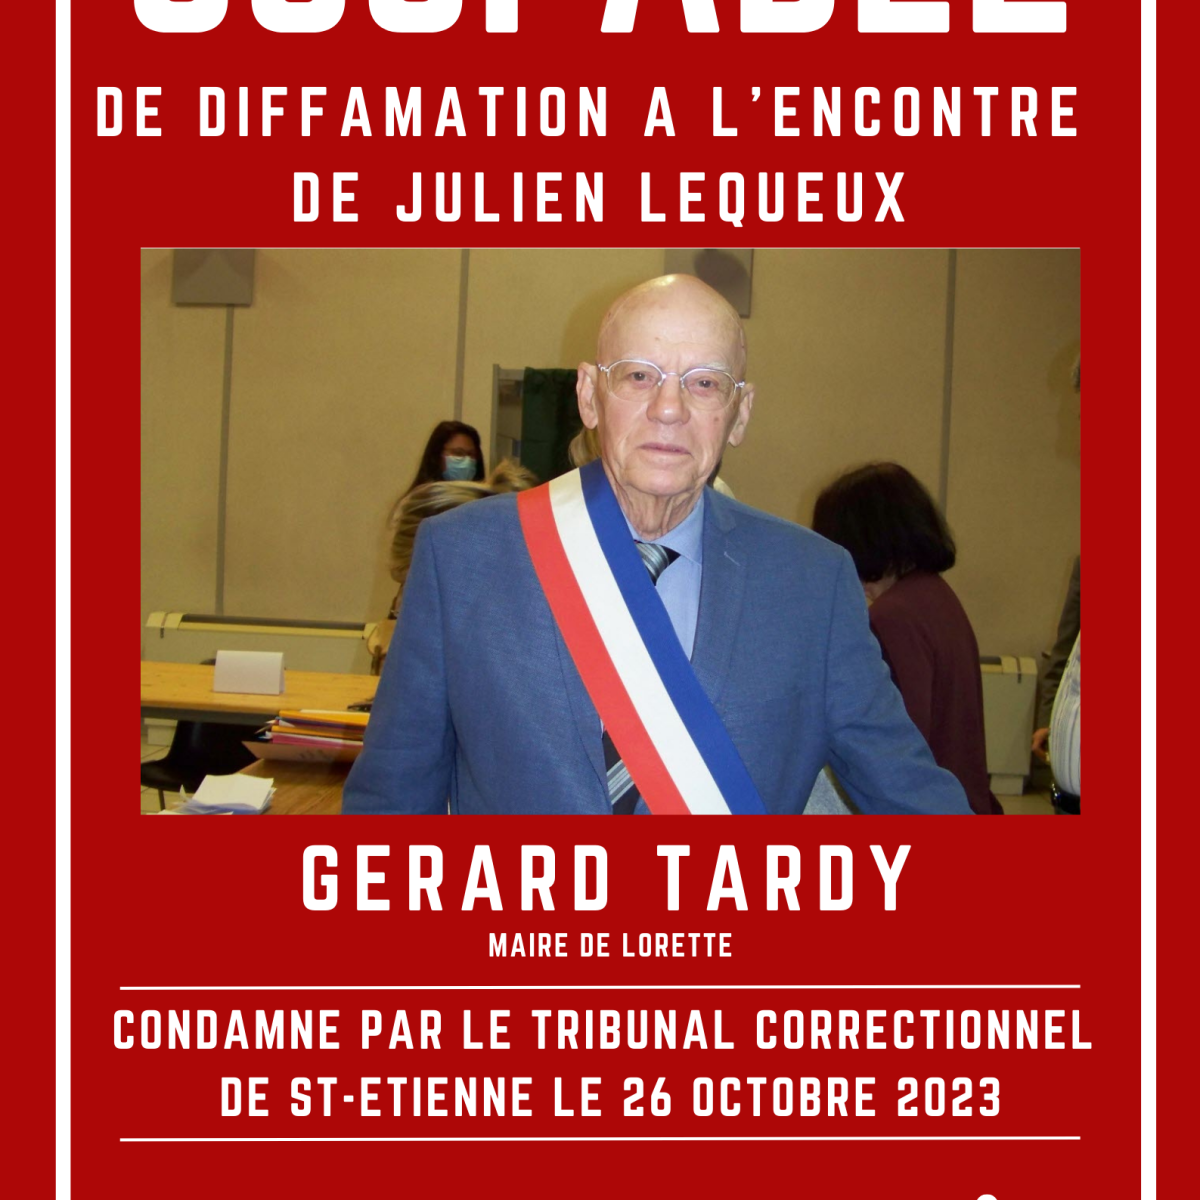 Gérard Tardy condamné pour diffamation !